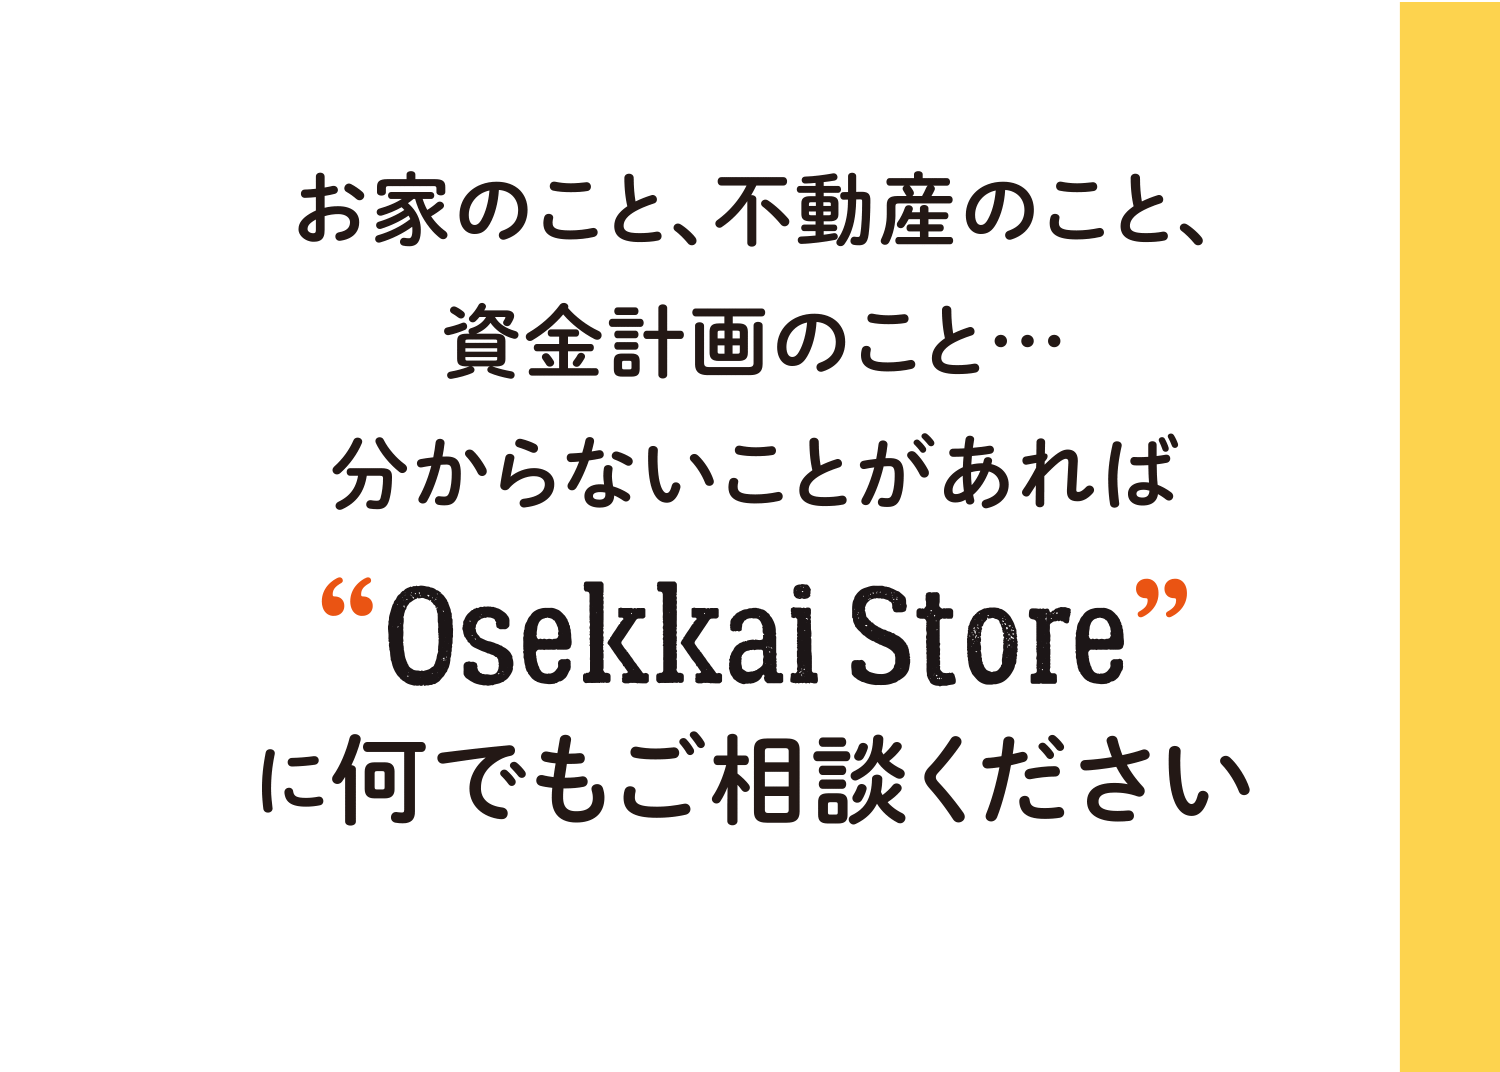 お家のこと、不動産のこと、資金計画のこと…分からないことがあれば“Osekkai Store”に何でもご相談ください